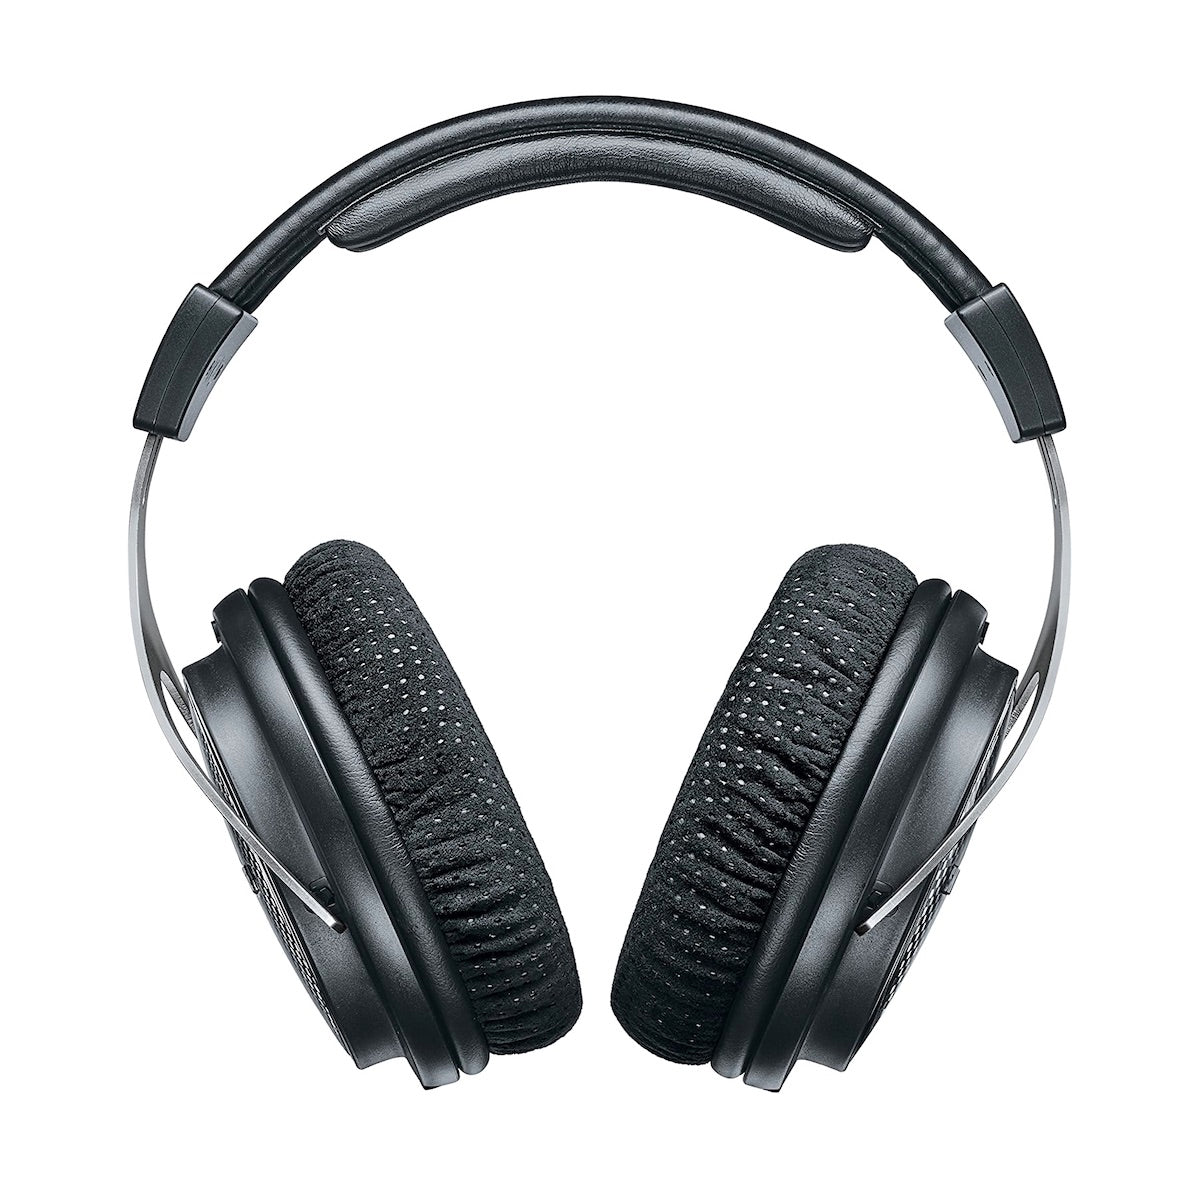 Shure SRH1540 - Premium Closed-Back Headphones